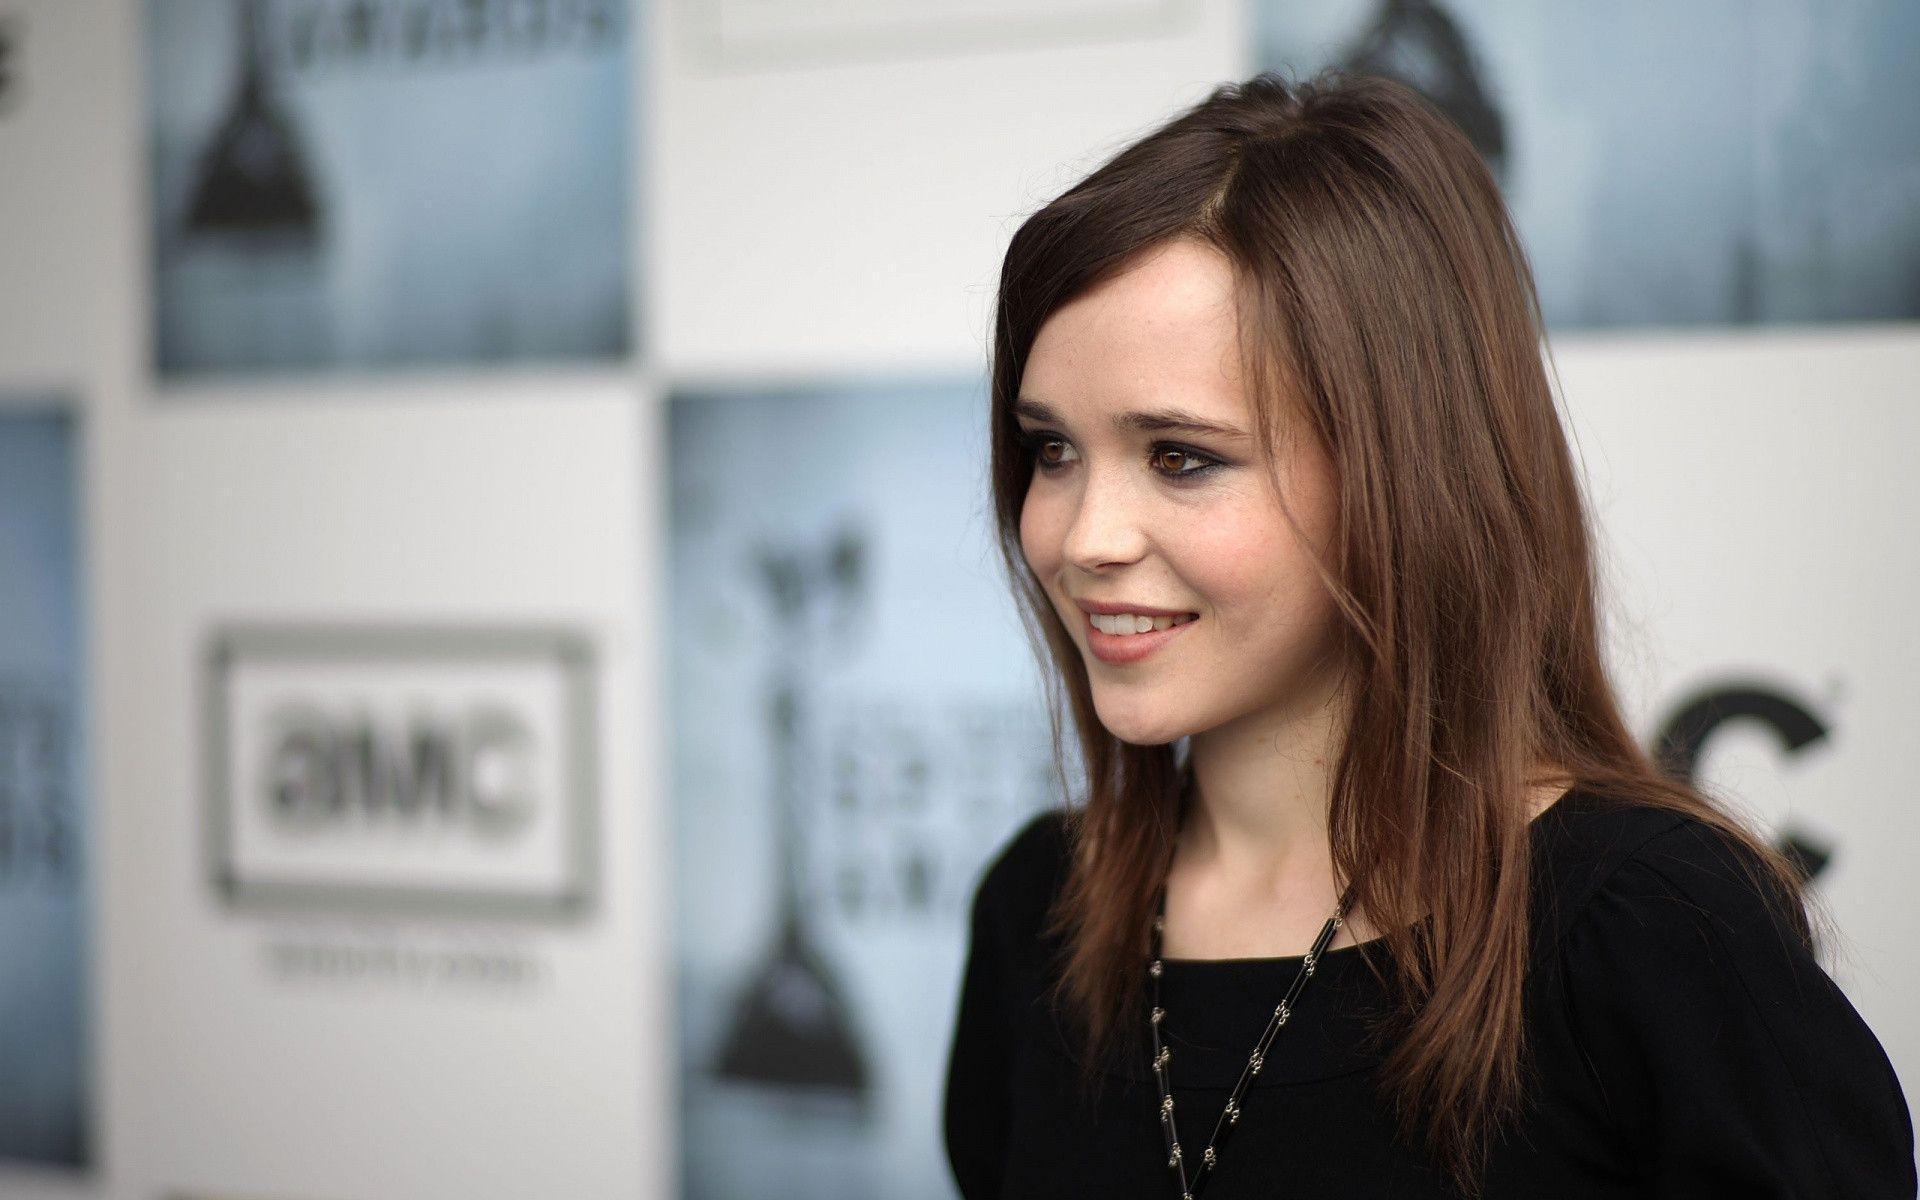 Ellen Page Sweet Girl Wallpaper HD Free Downlo Wallpaper